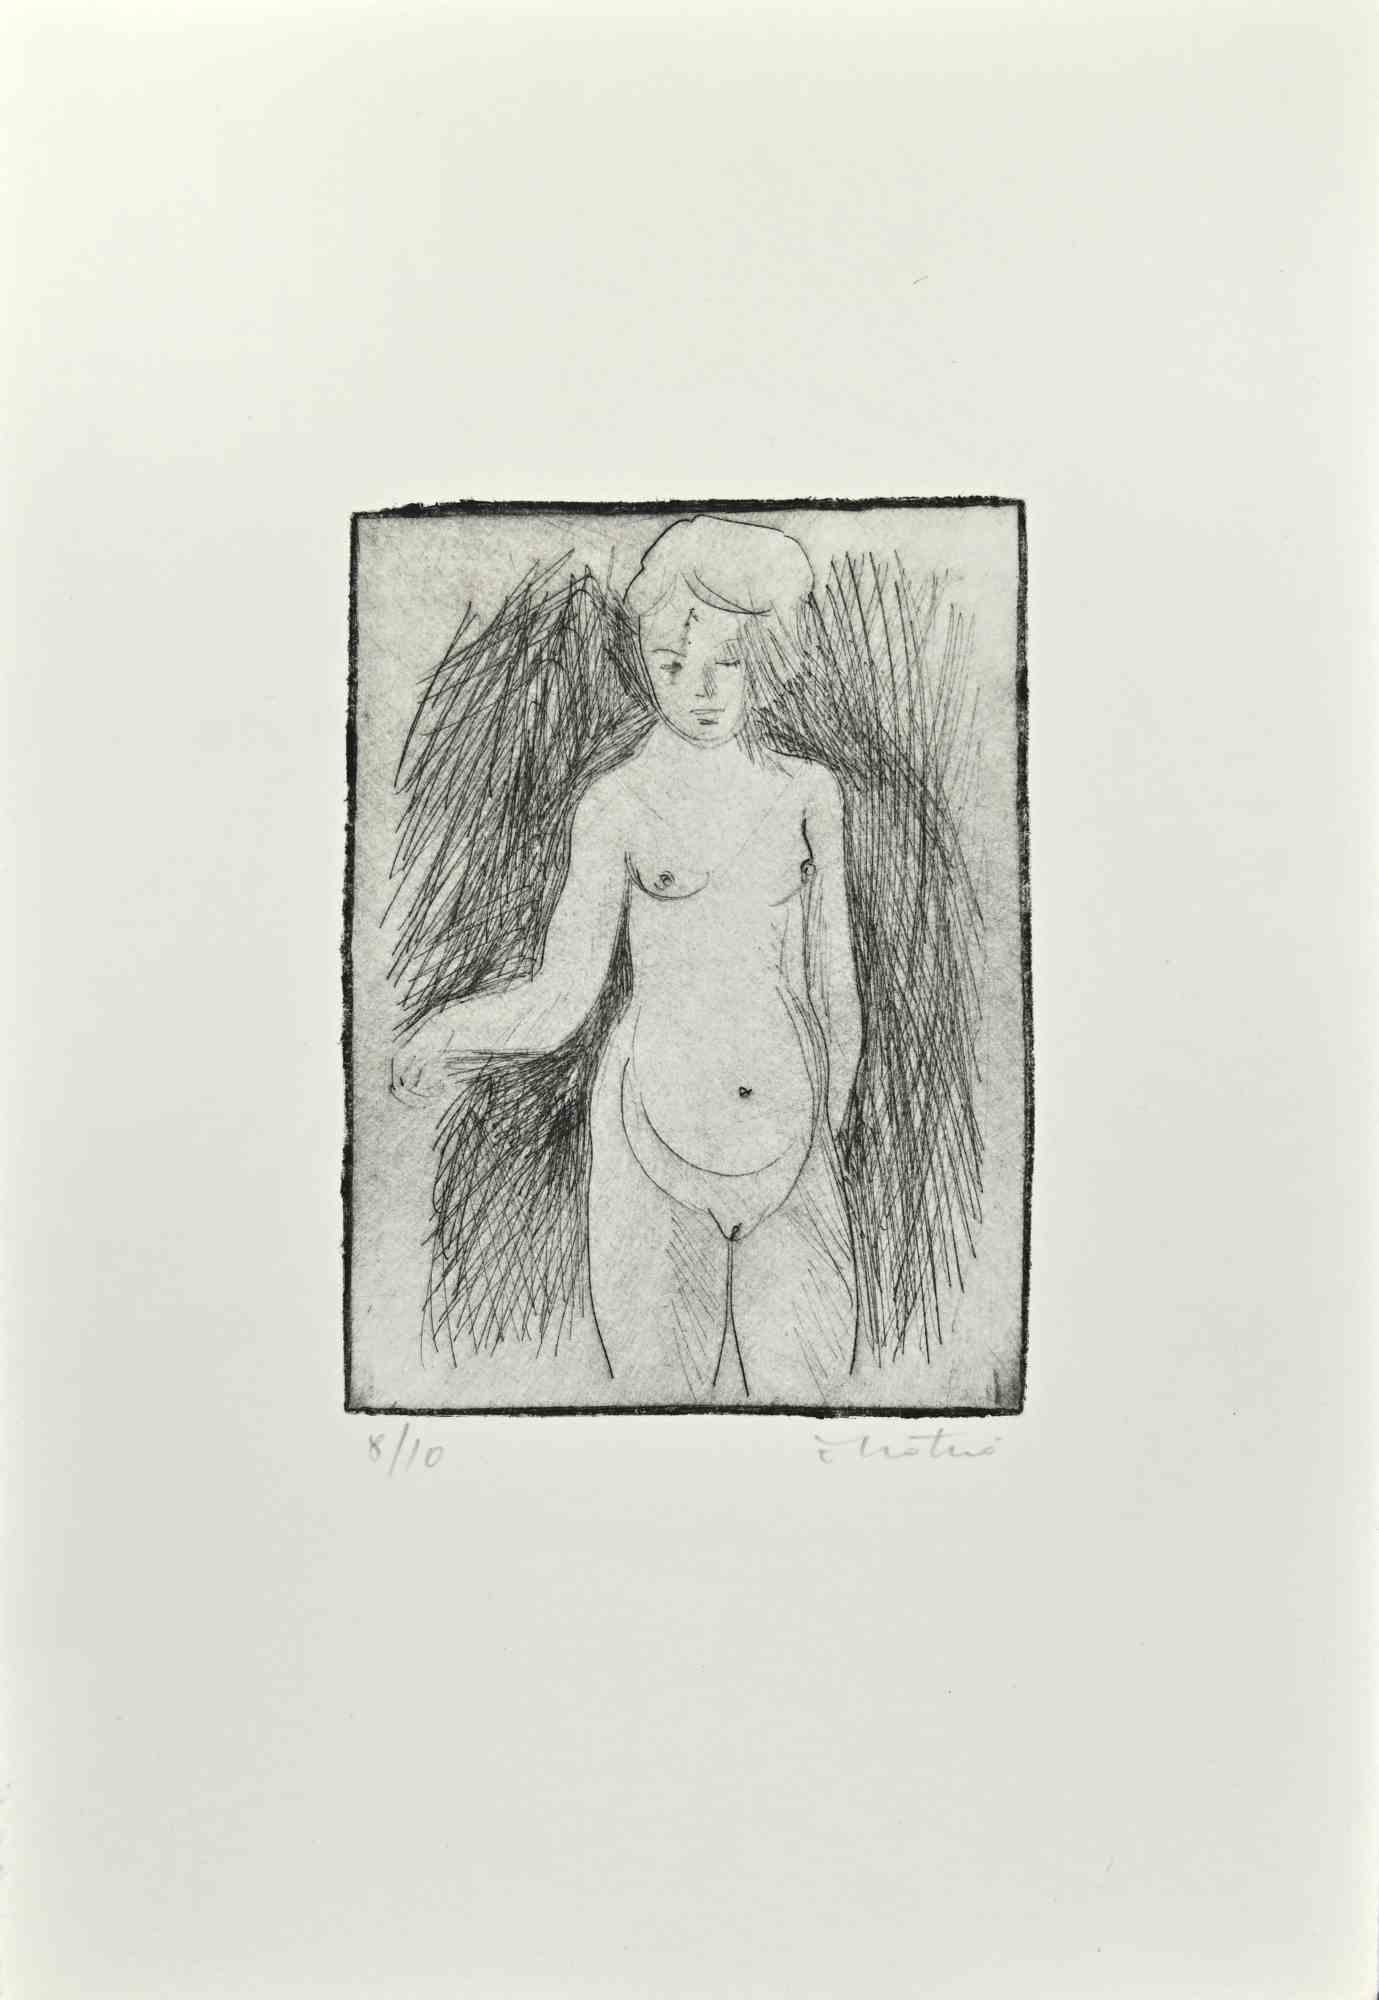 Nude ist eine Radierung von Enotrio Pugliese aus dem Jahr 1963.

Limitierte Auflage von 10 Exemplaren, nummeriert und vom Künstler signiert.

Guter Zustand auf einem weißen Karton.

Enotrio Pugliese (11. Mai 1920 - August 1989) war ein italienischer